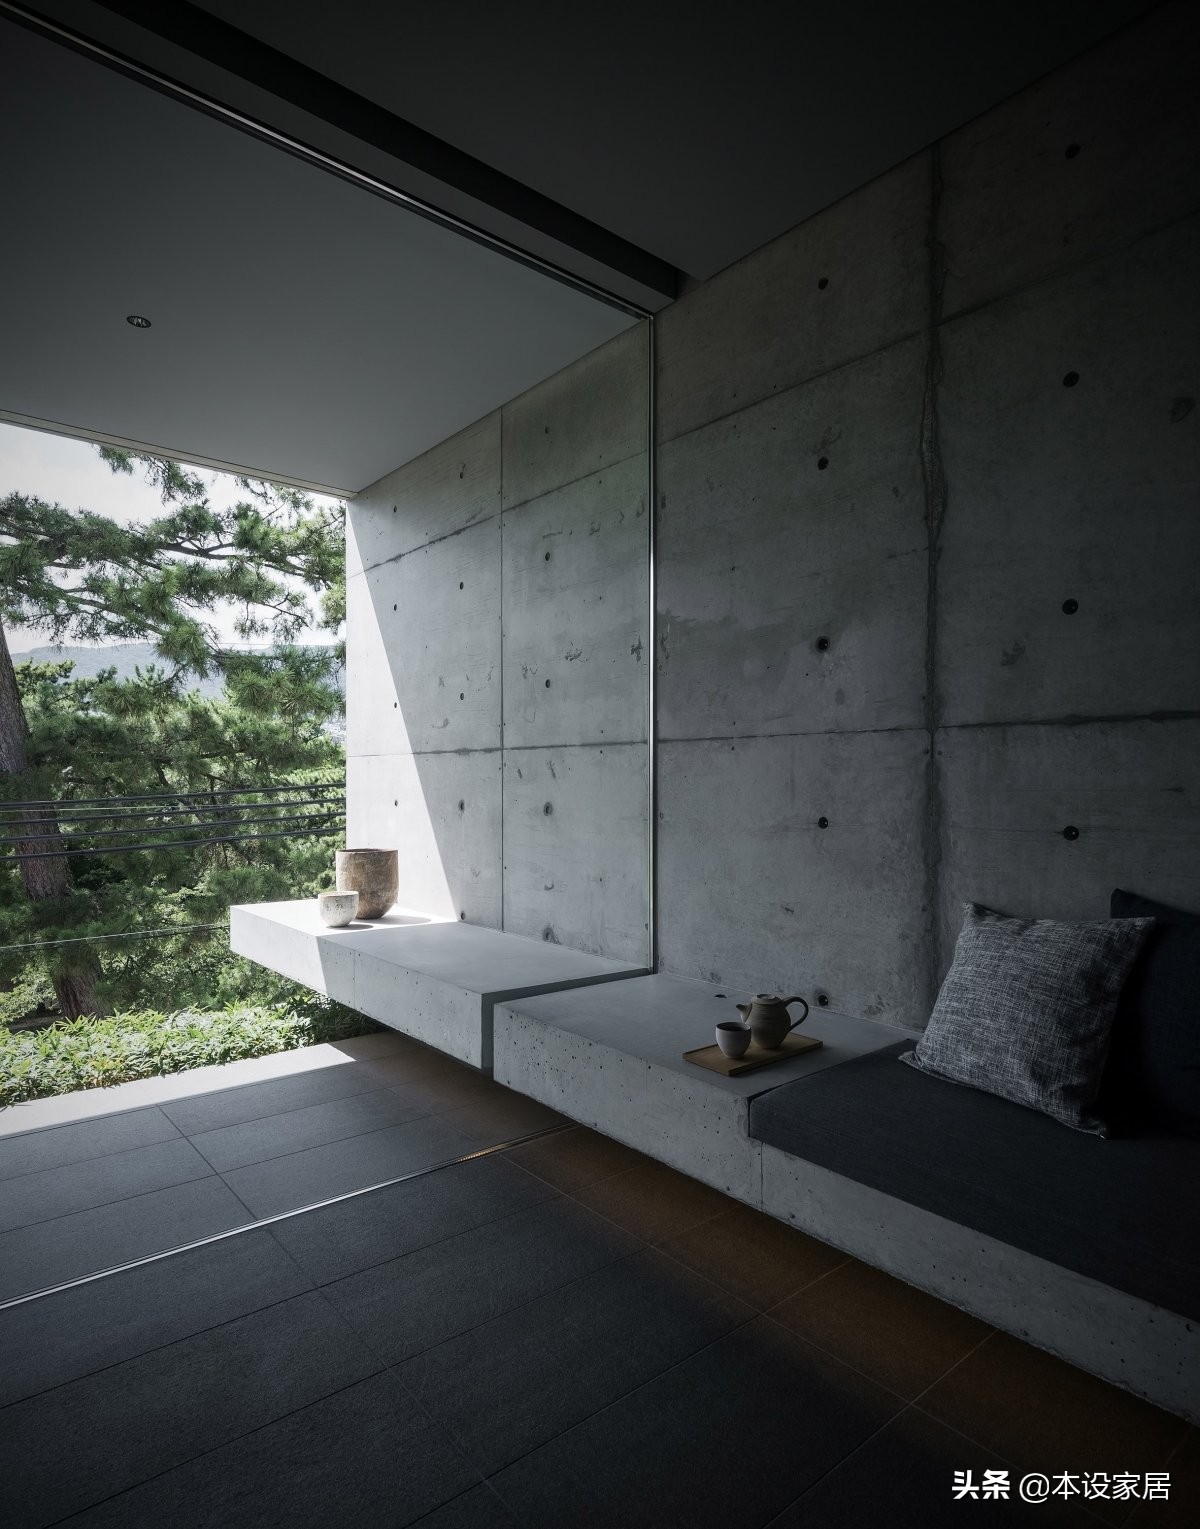 日本建筑师Go Fujita晒出清水混泥土别墅，引来无数网友围观，考究